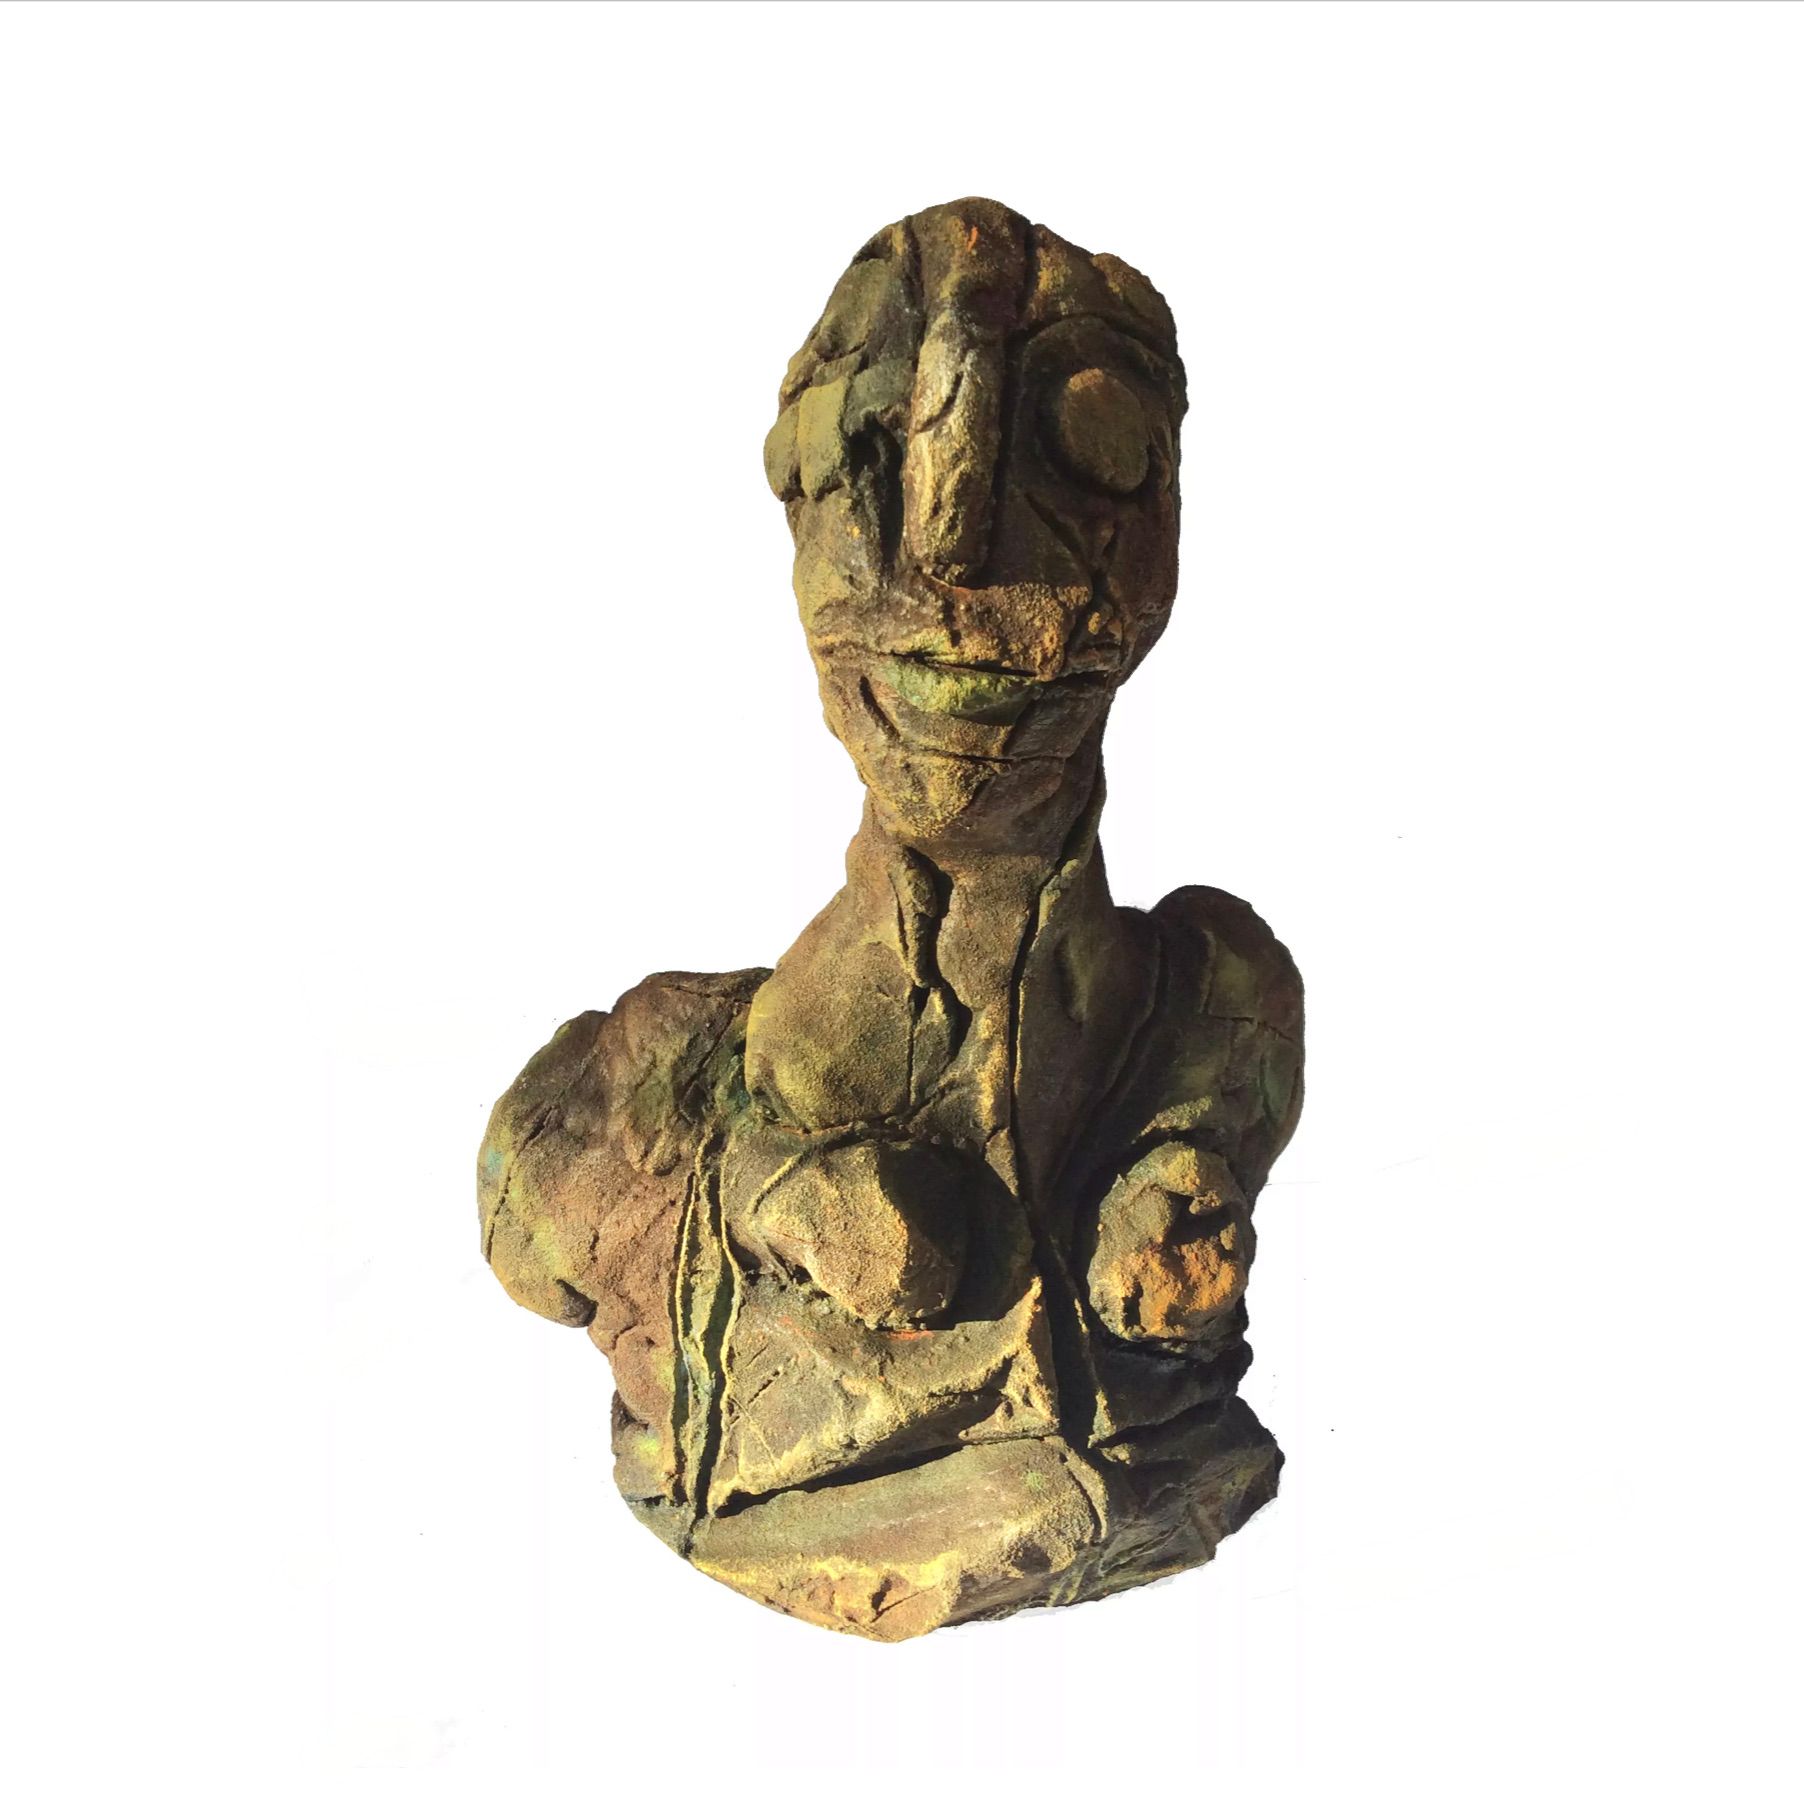 El "Pequeño busto" de Ilona Schmidt muestra una cabeza modelada en arcilla, modelada y cocida, masa de estructura fracturada, pátina